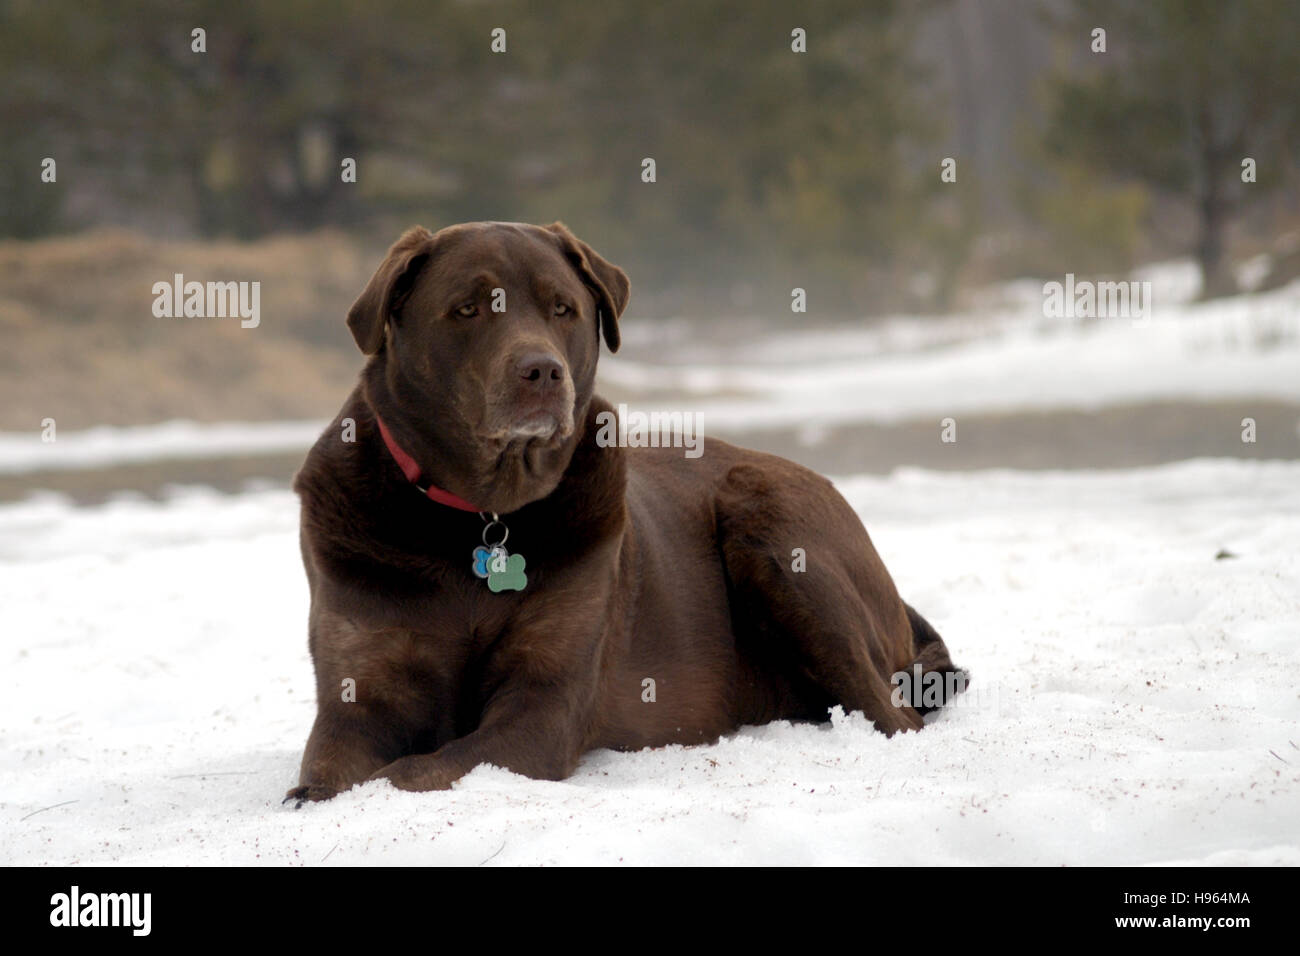 Chocolate Labrador Retriever in snow Stock Photo